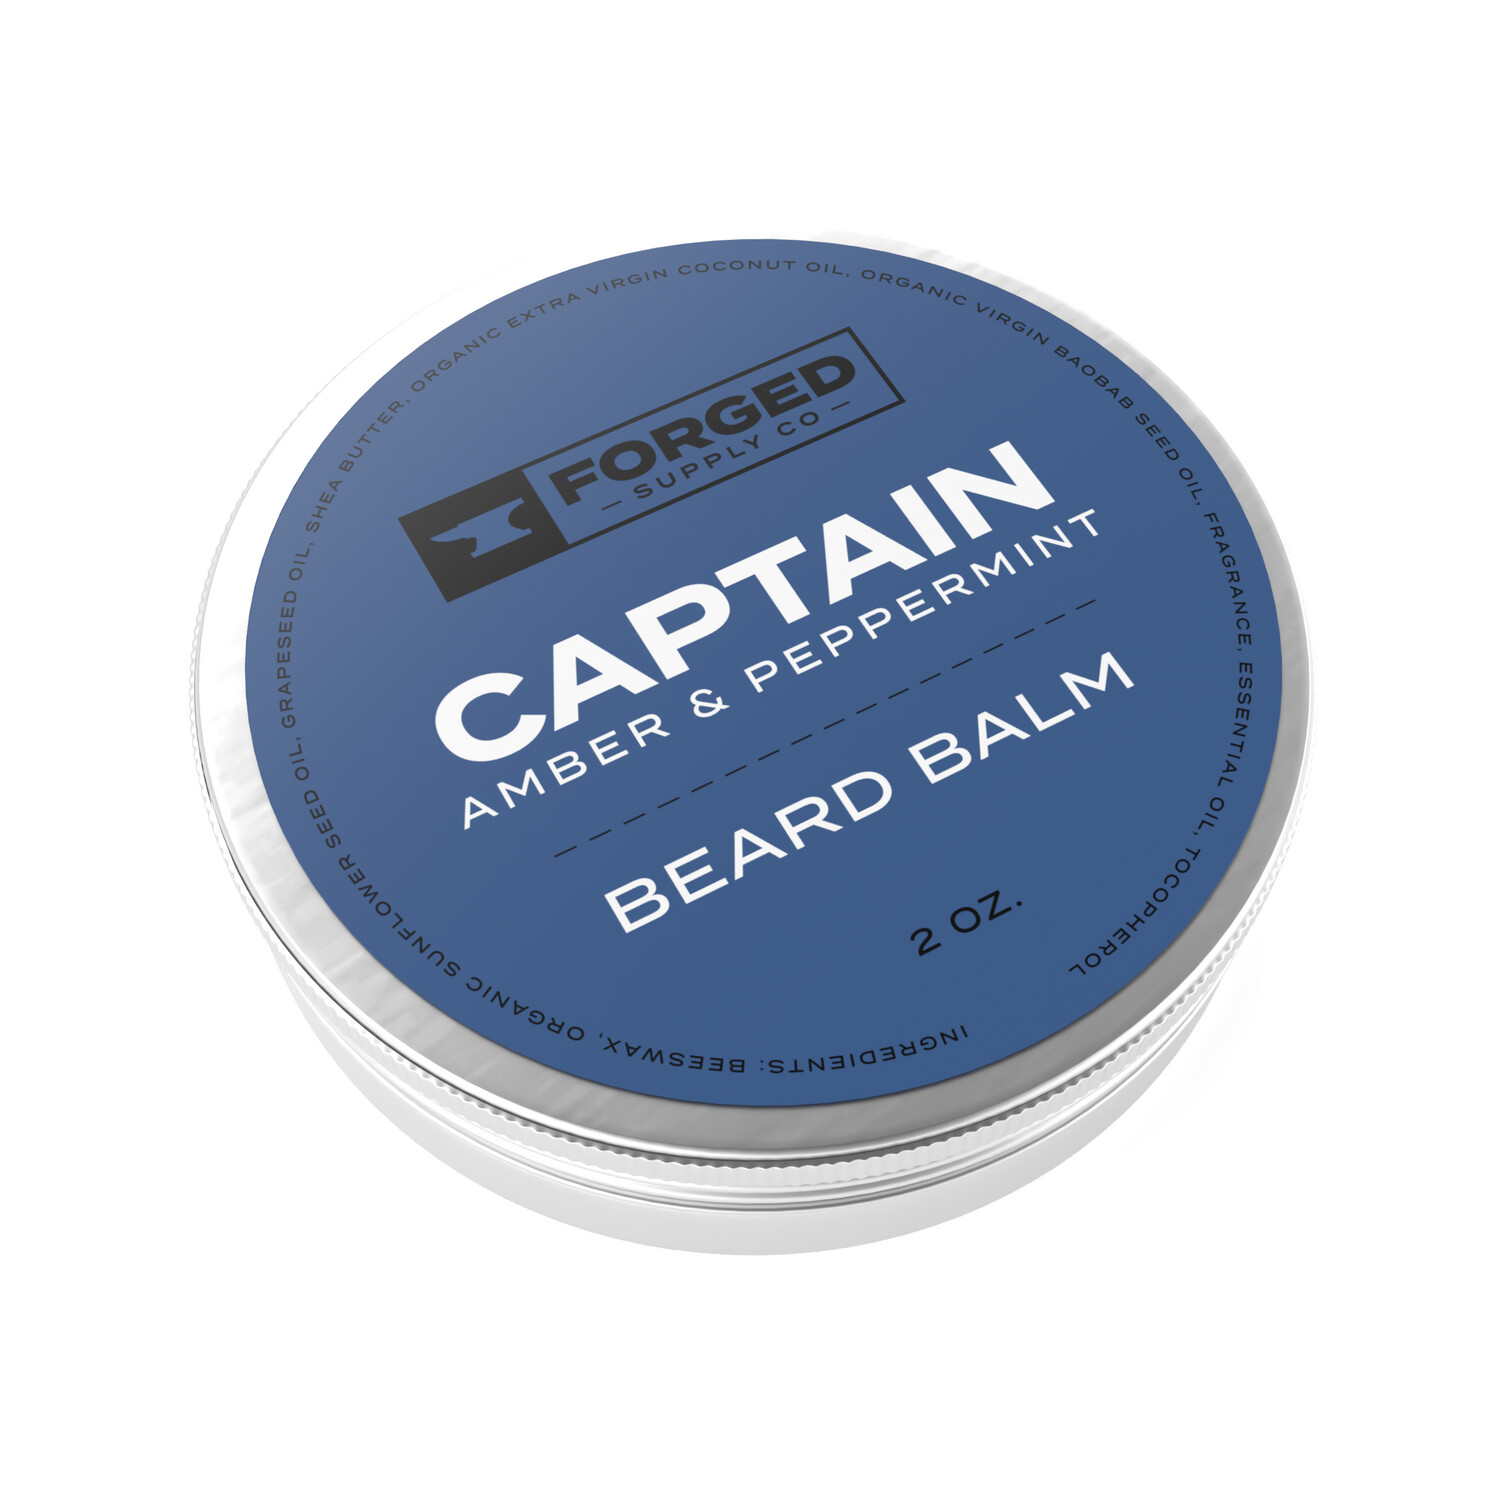 Captain Beard Balm